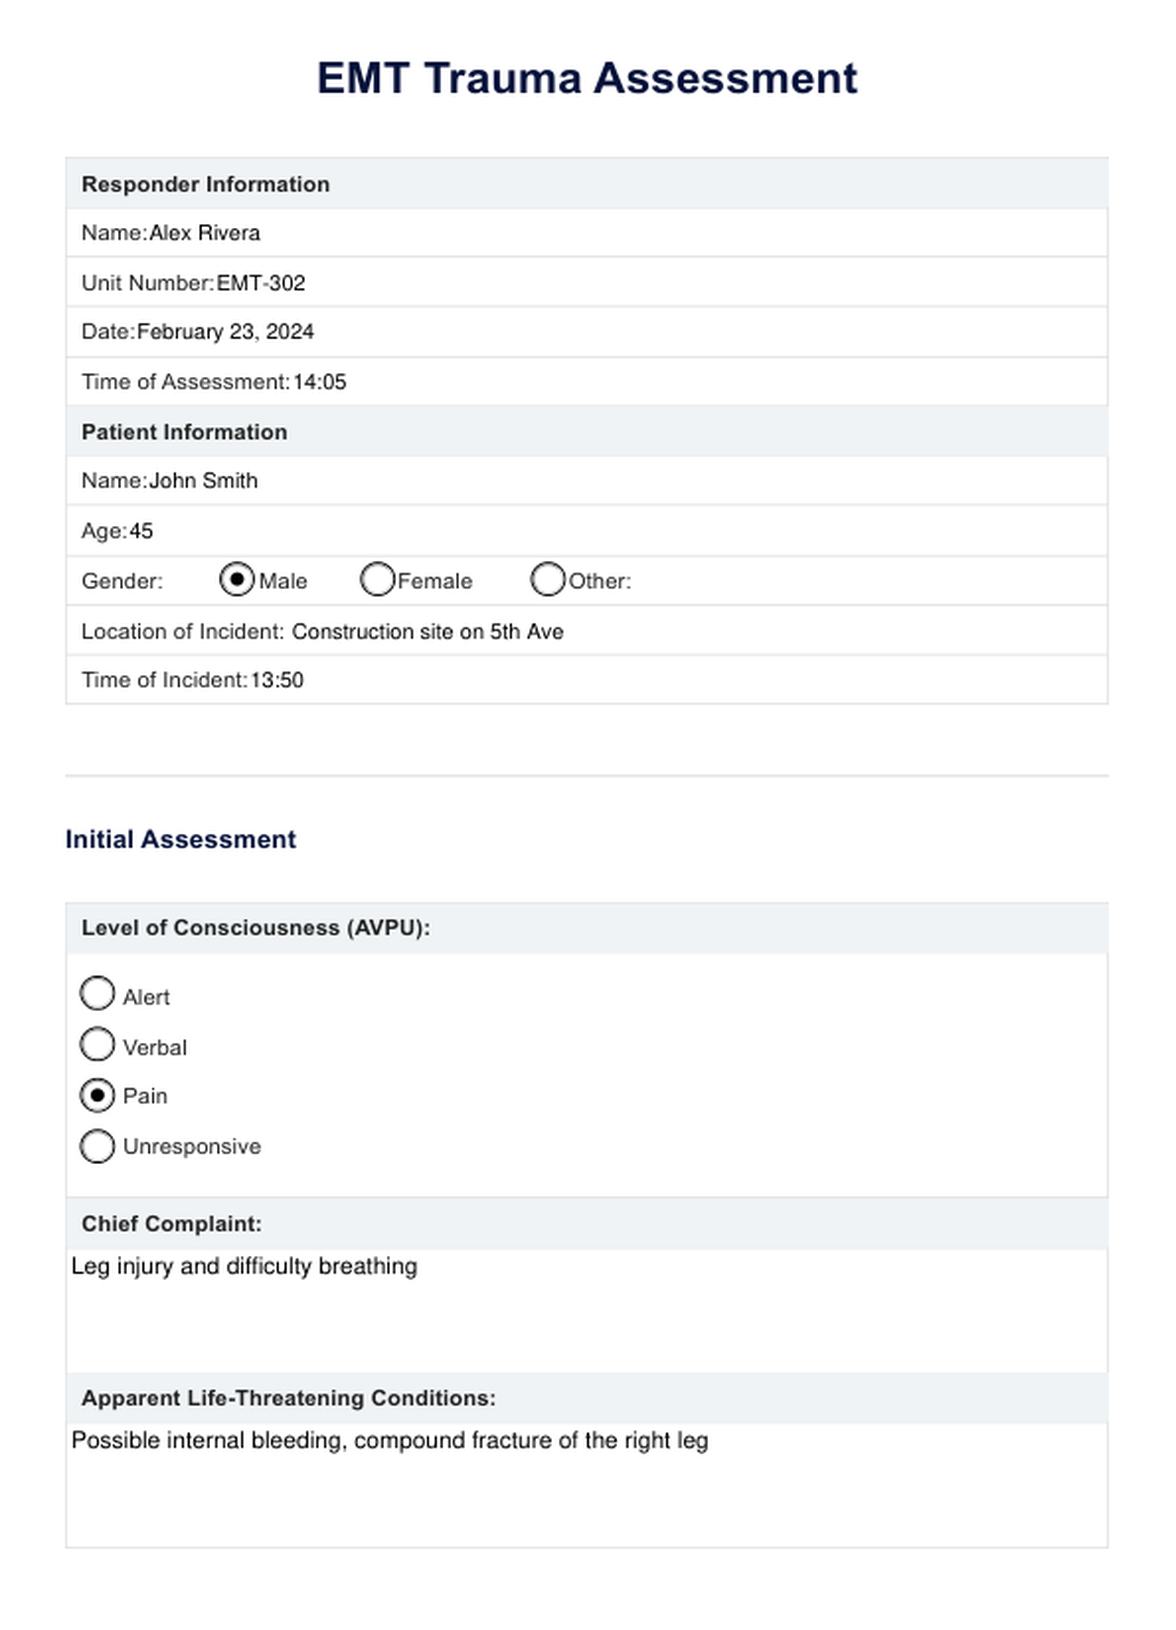 EMT Trauma Assessment PDF Example